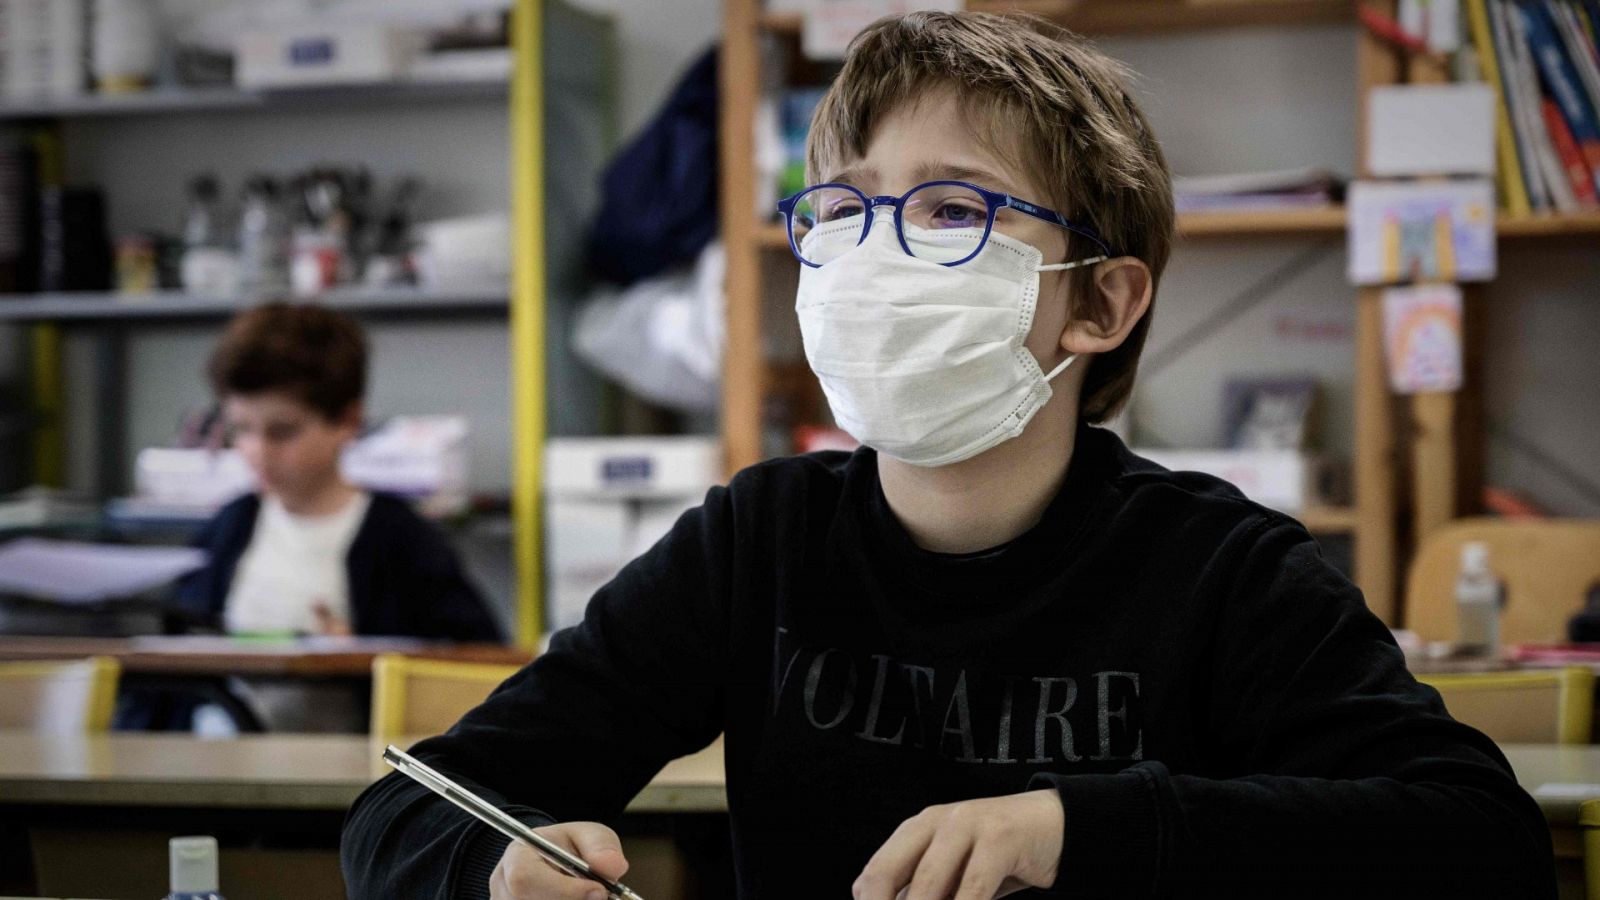 Coronavirus | Miles de niños vuelven al colegio en el inicio de la desescalada en Francia - RTVE.es